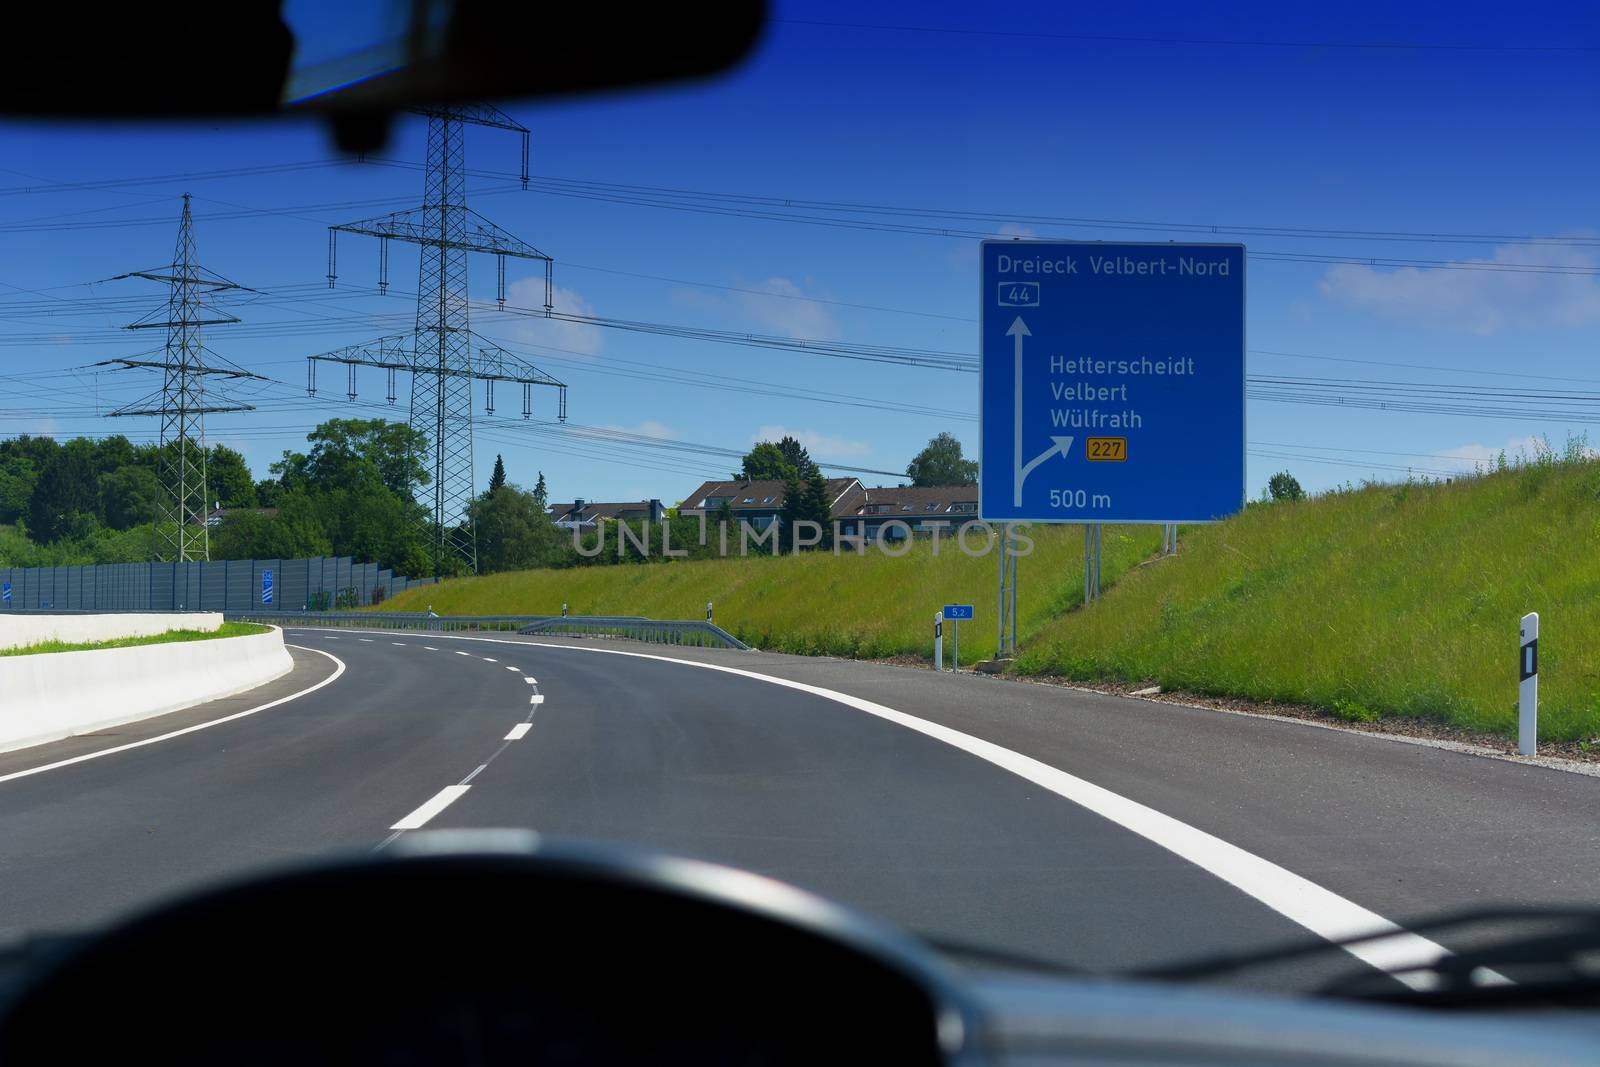 German motorway sign with inscription in German Driving direction to the cities - Velbert, Heiligenhaus, Wuelfrath and Hetterscheidt